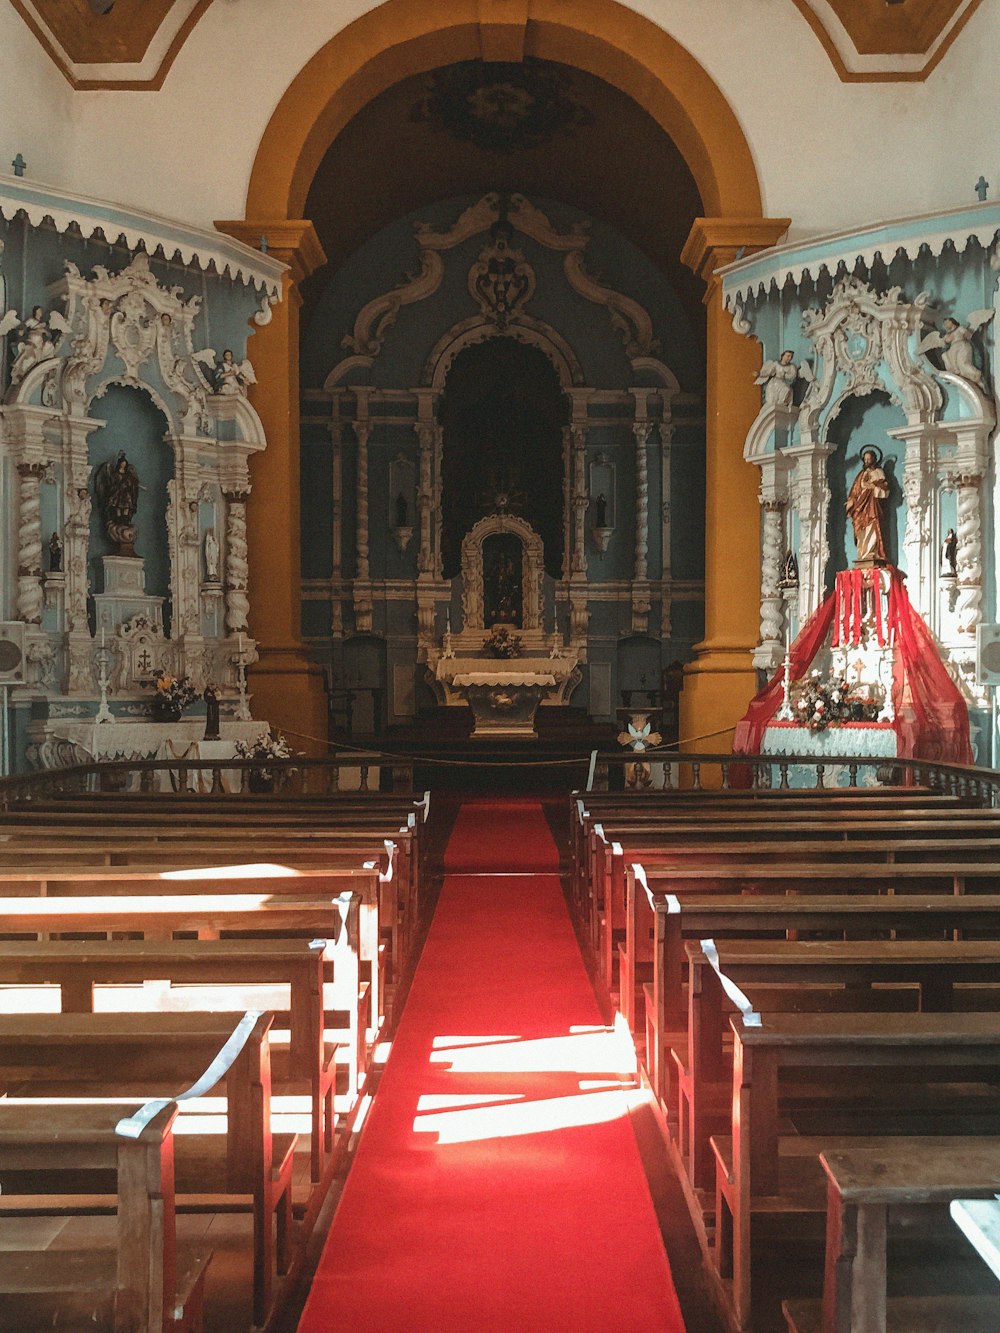 a red carpet in a church